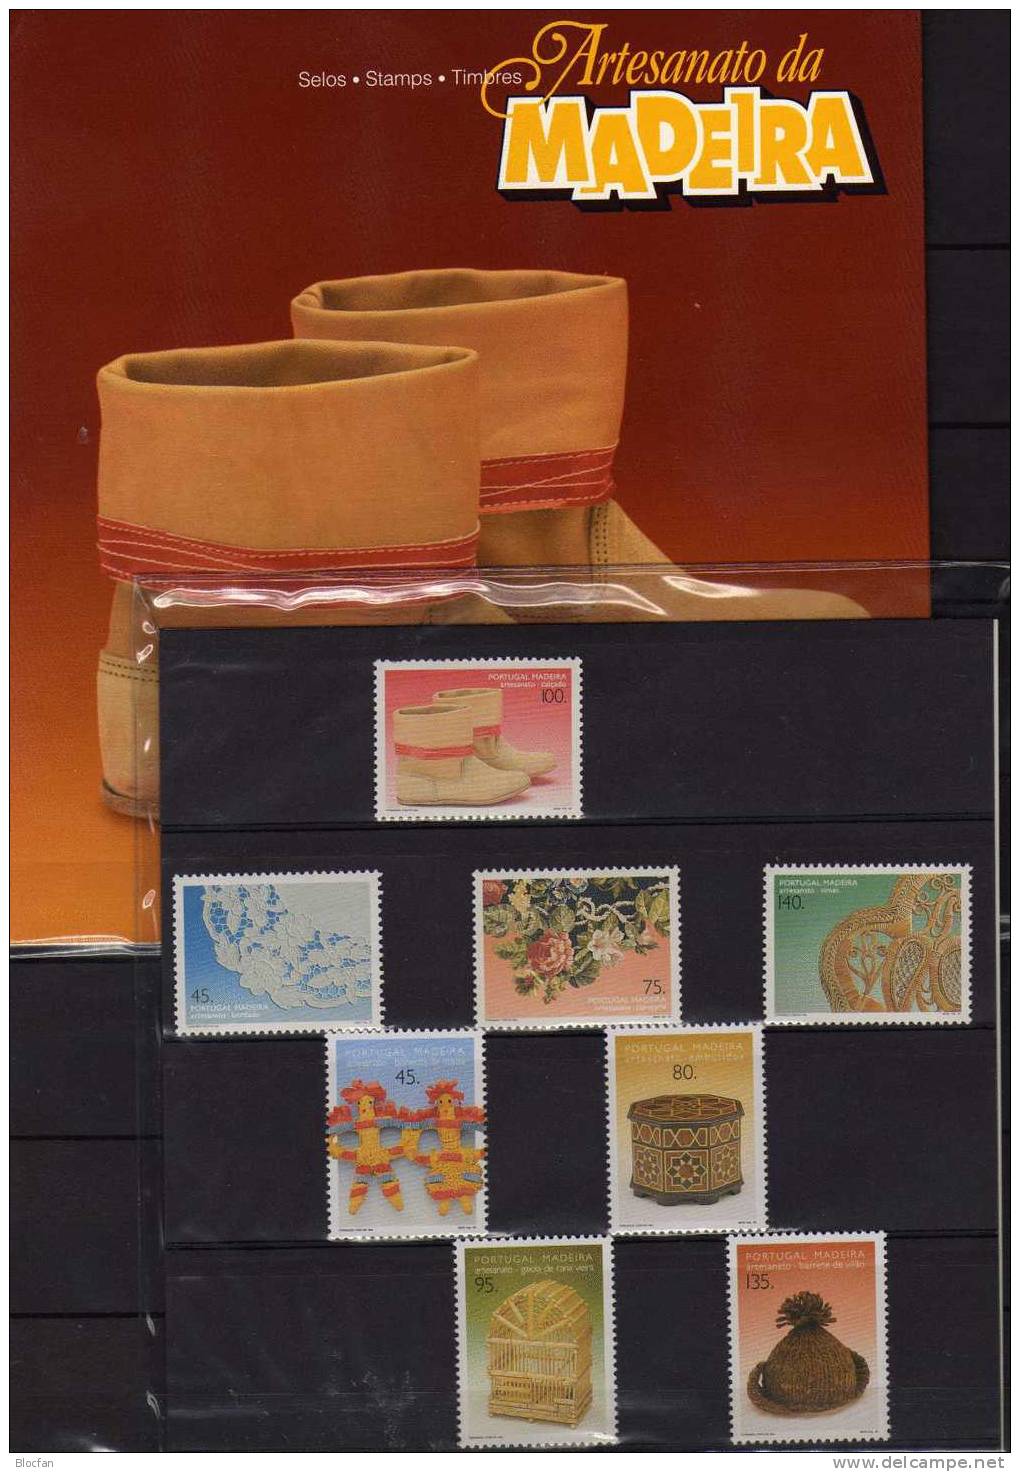 Volkskunst 1995 Auf Portugal Madeira Buch 1/1995 ** 22€ Loch-Stickerei Wand-Teppich Traditionelle Schuhe Korb-Flechterei - Carnets